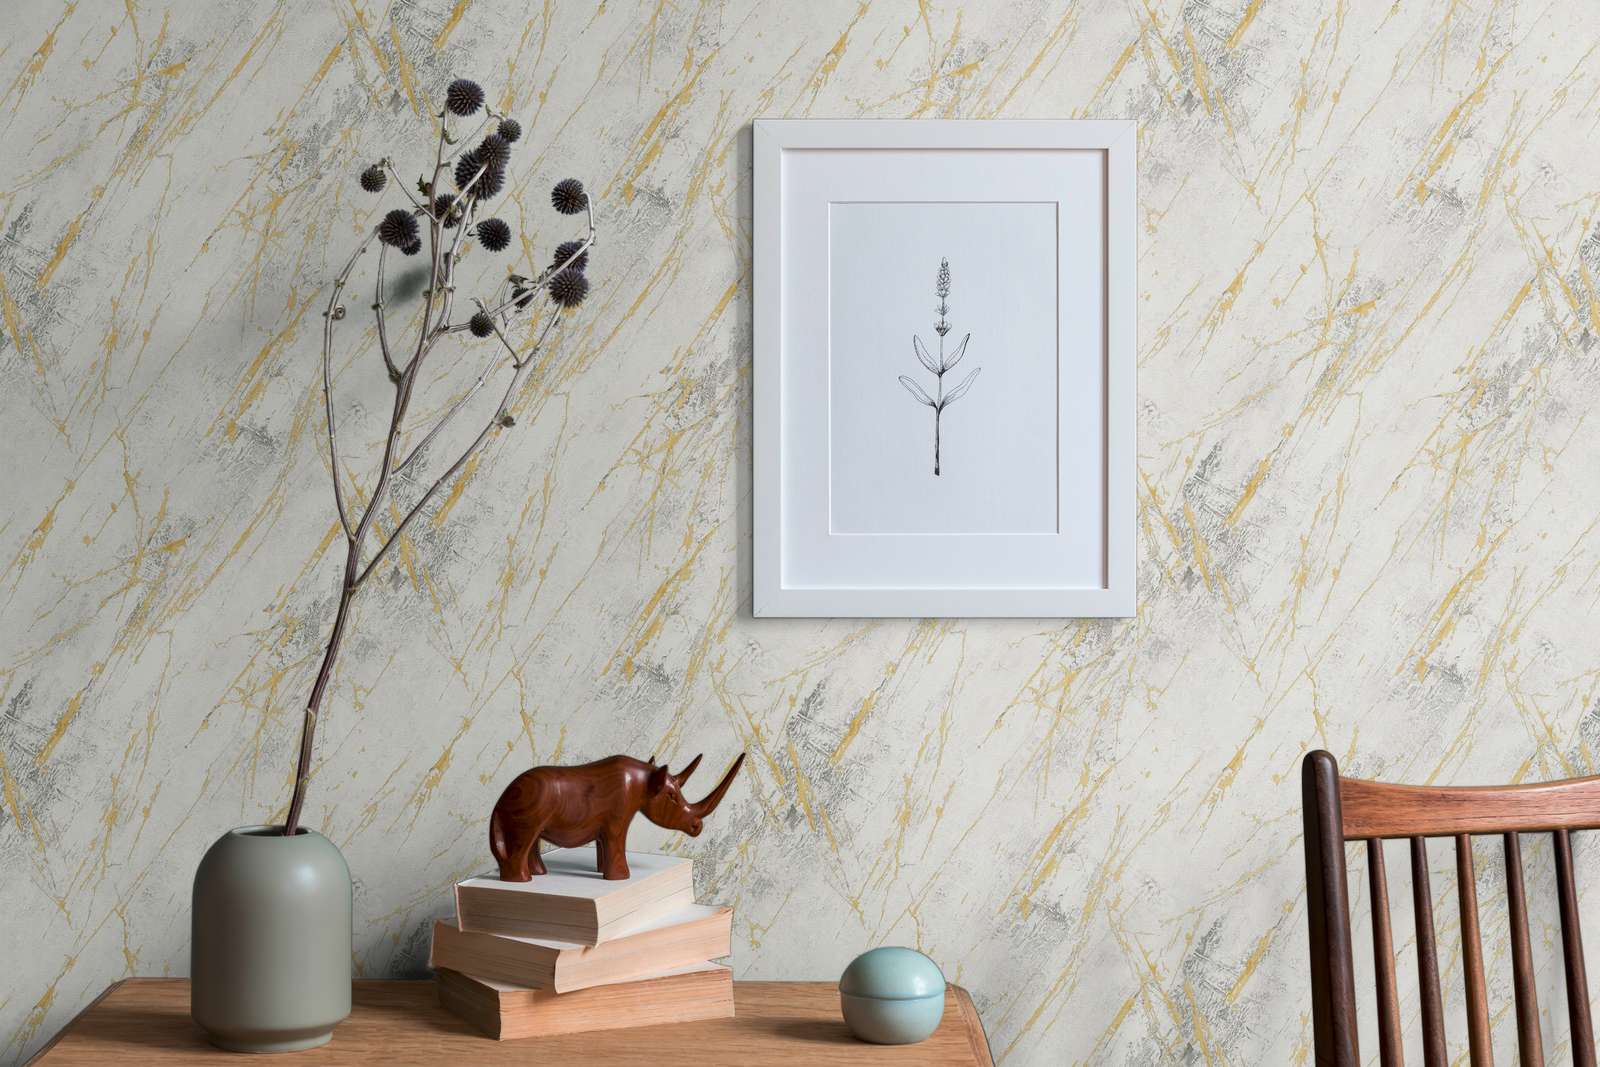             Papier peint marbre doré avec motif à texture métallique - blanc, métallique
        